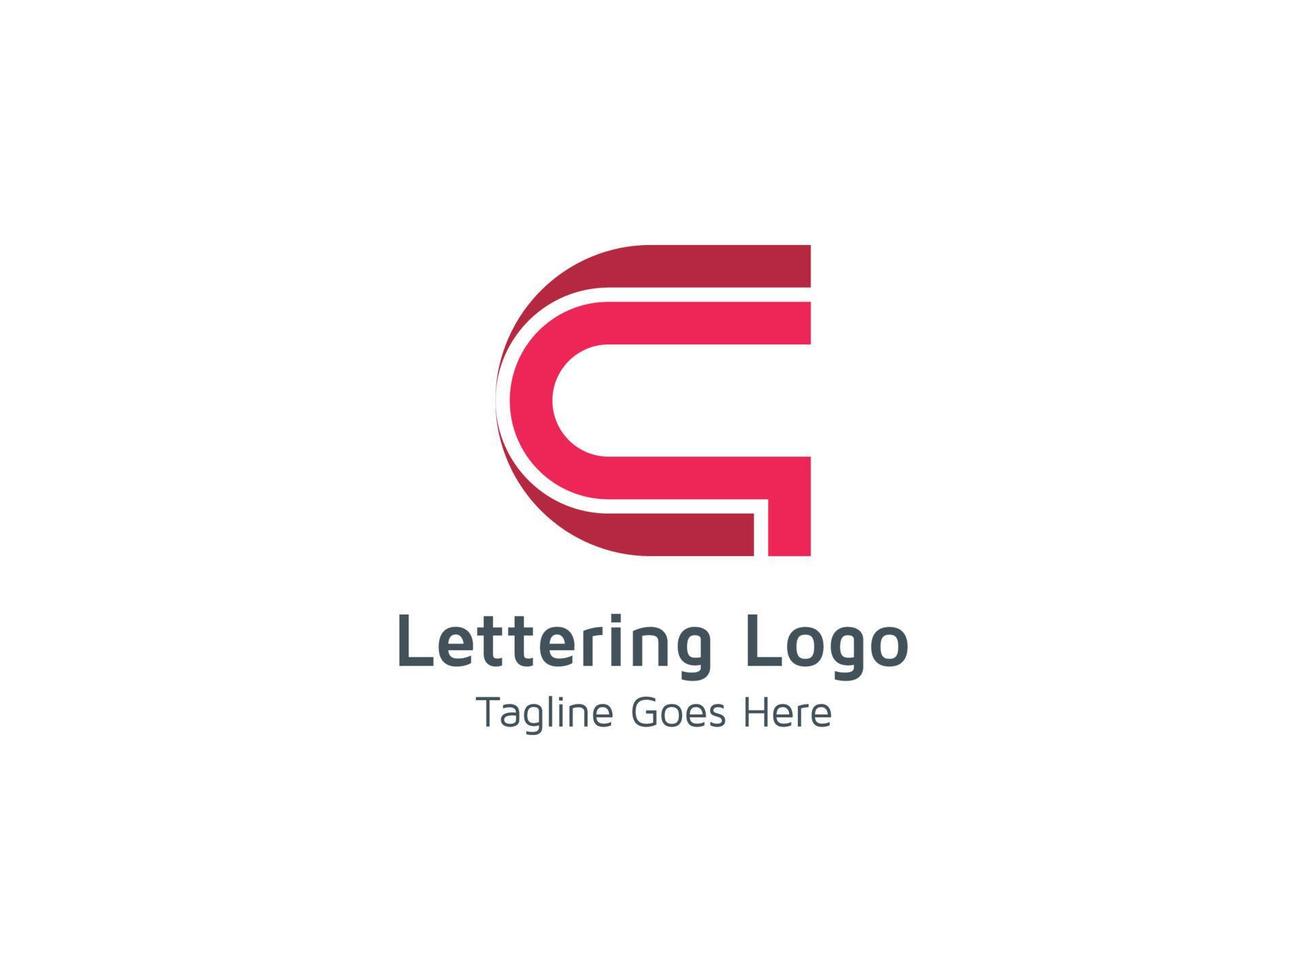 plantilla de diseño de logotipo inicial de letra c creativa vector gratis